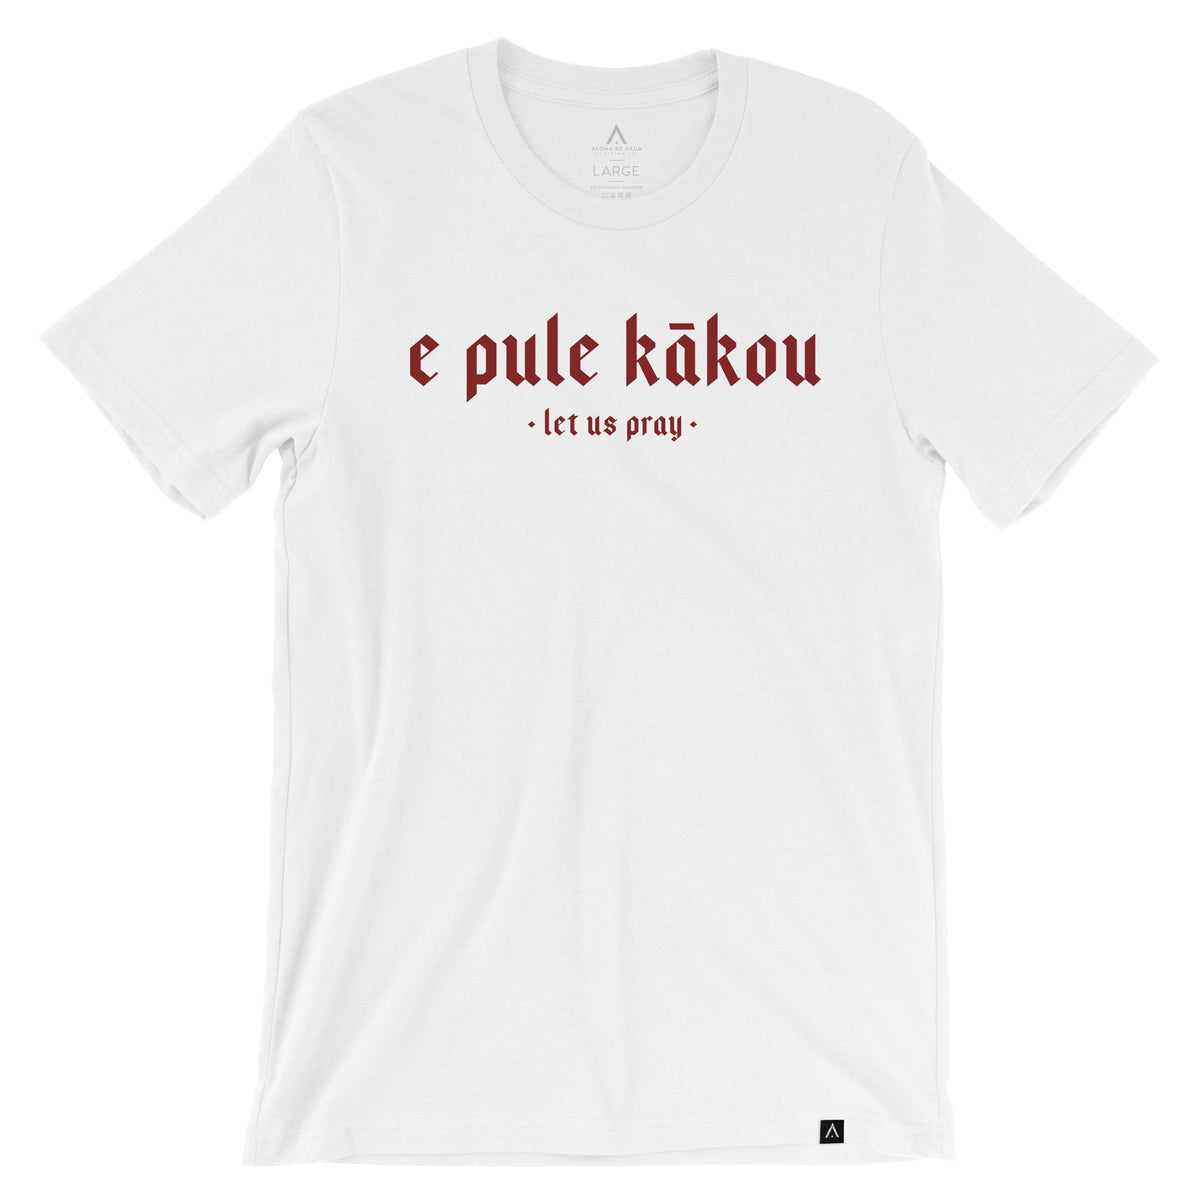 Pop-Up Mākeke - Aloha Ke Akua Clothing - E Pule Kākou 2.0 Men&#39;s Short Sleeve T-Shirt - White